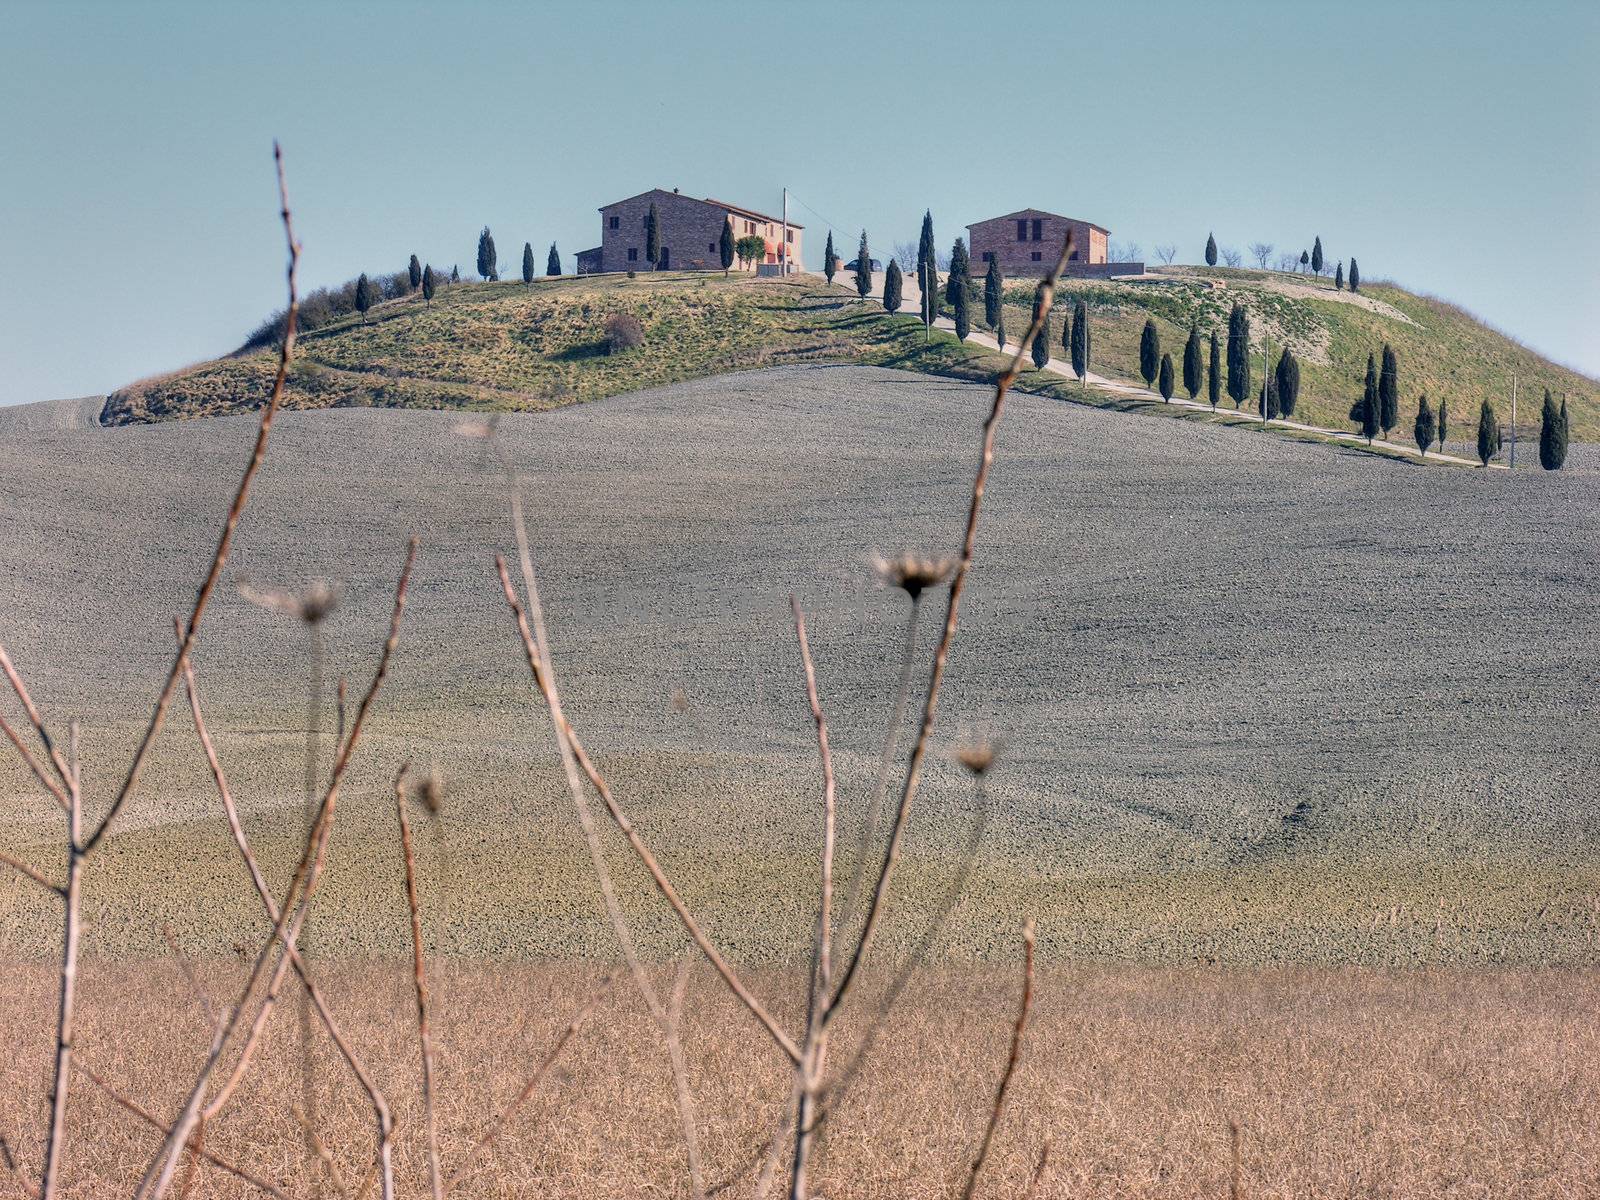 Countryside near Siena, Tuscany, Italy in February